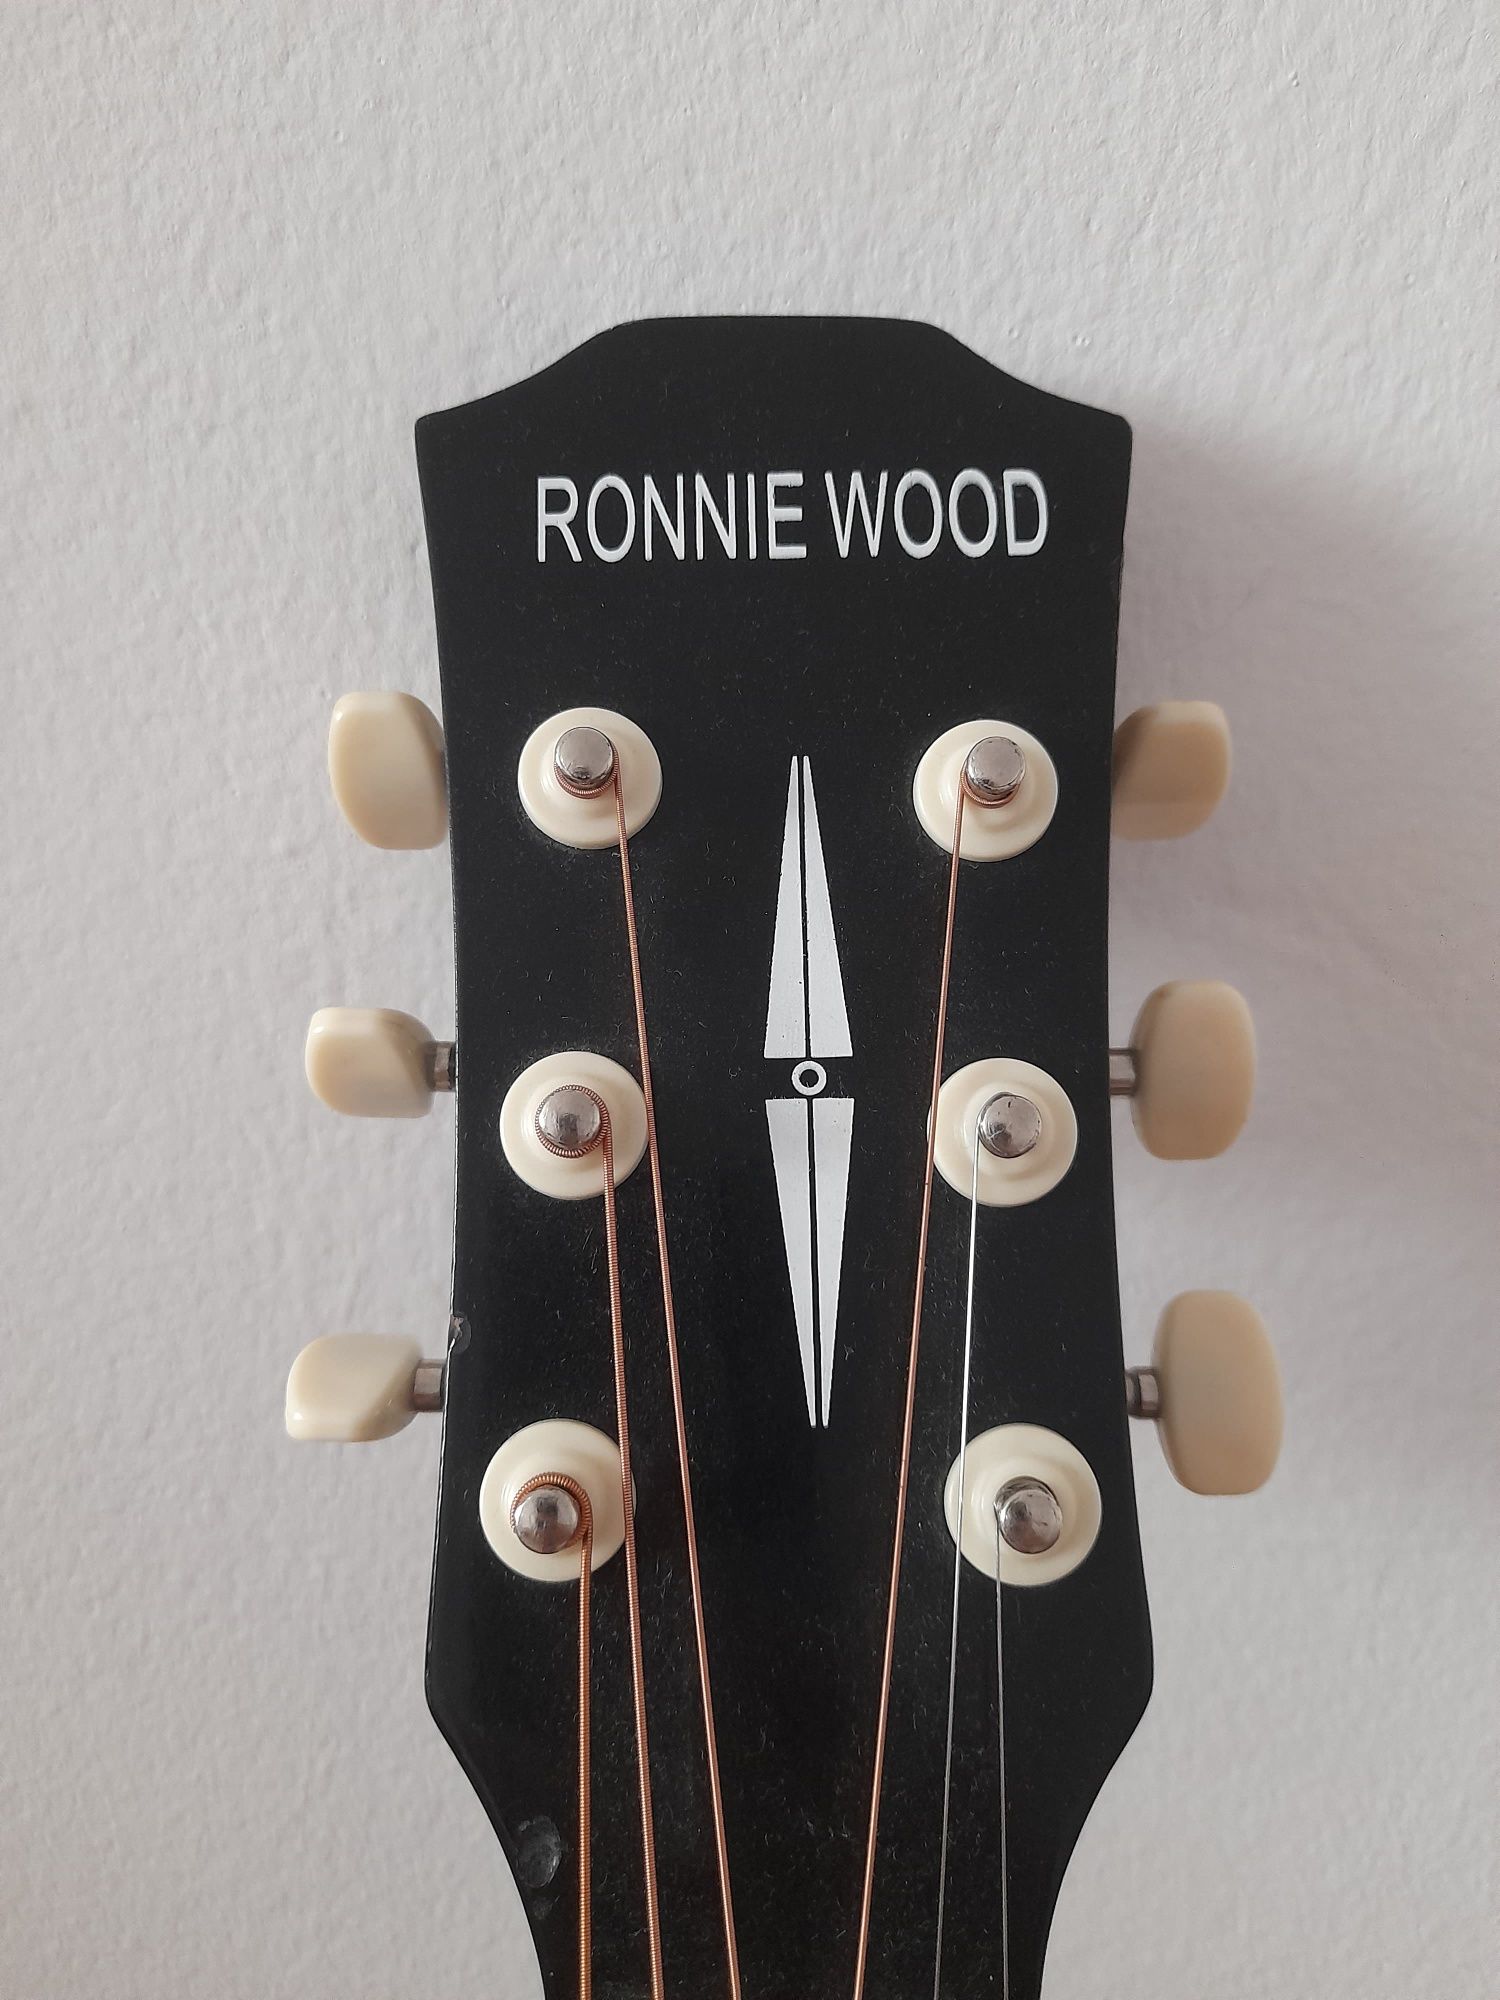 Акустическая гитара Ronnie Wood